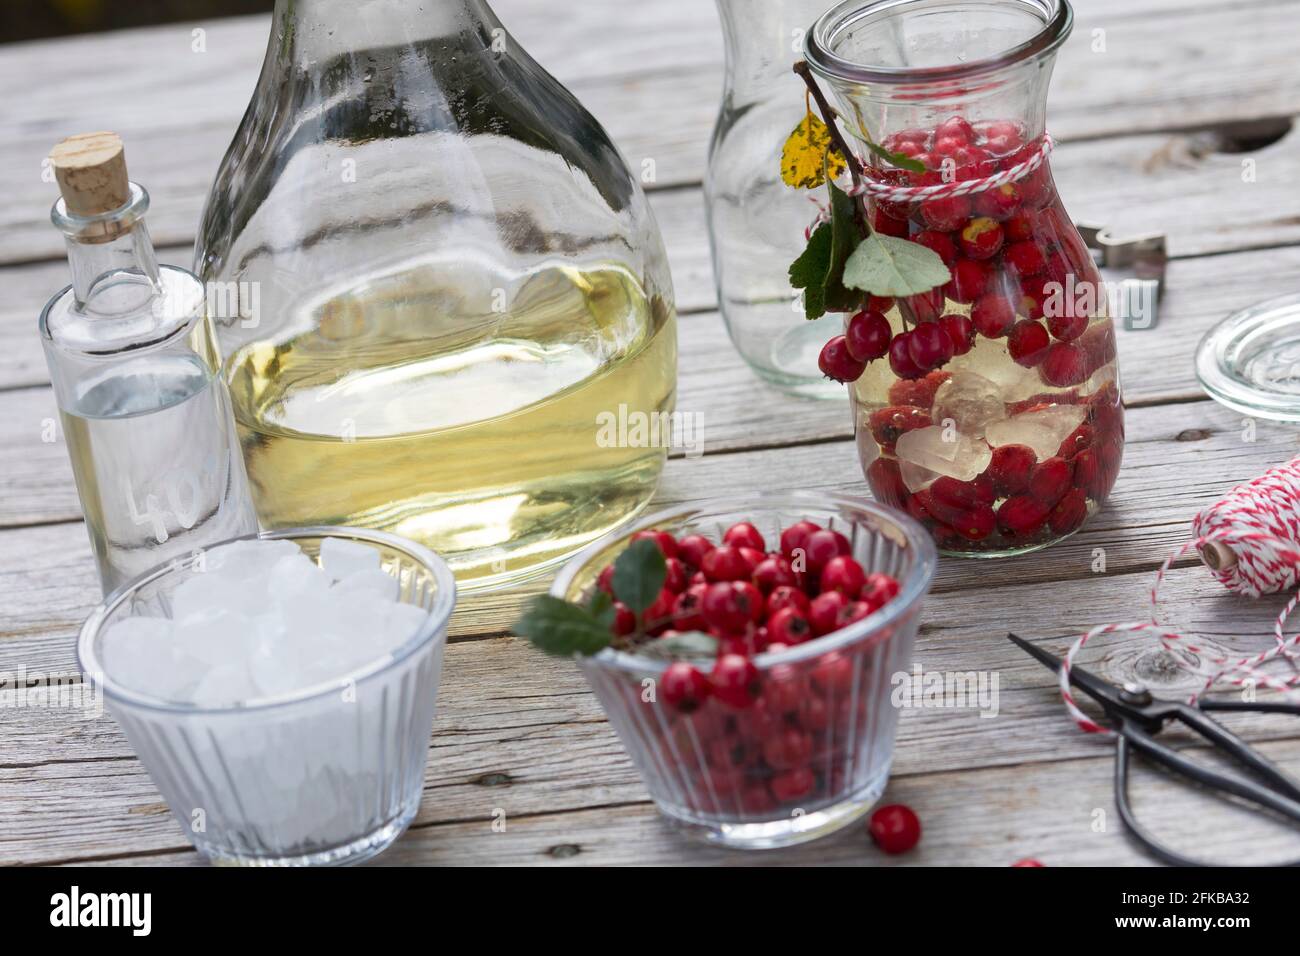 Anglais hawthorn, midland hawthorn (Crataegus laevigata, Crataegus oxyacantha), fabrication de vin hawthorn, fruits sont marinés dans le vin blanc , Allemagne Banque D'Images